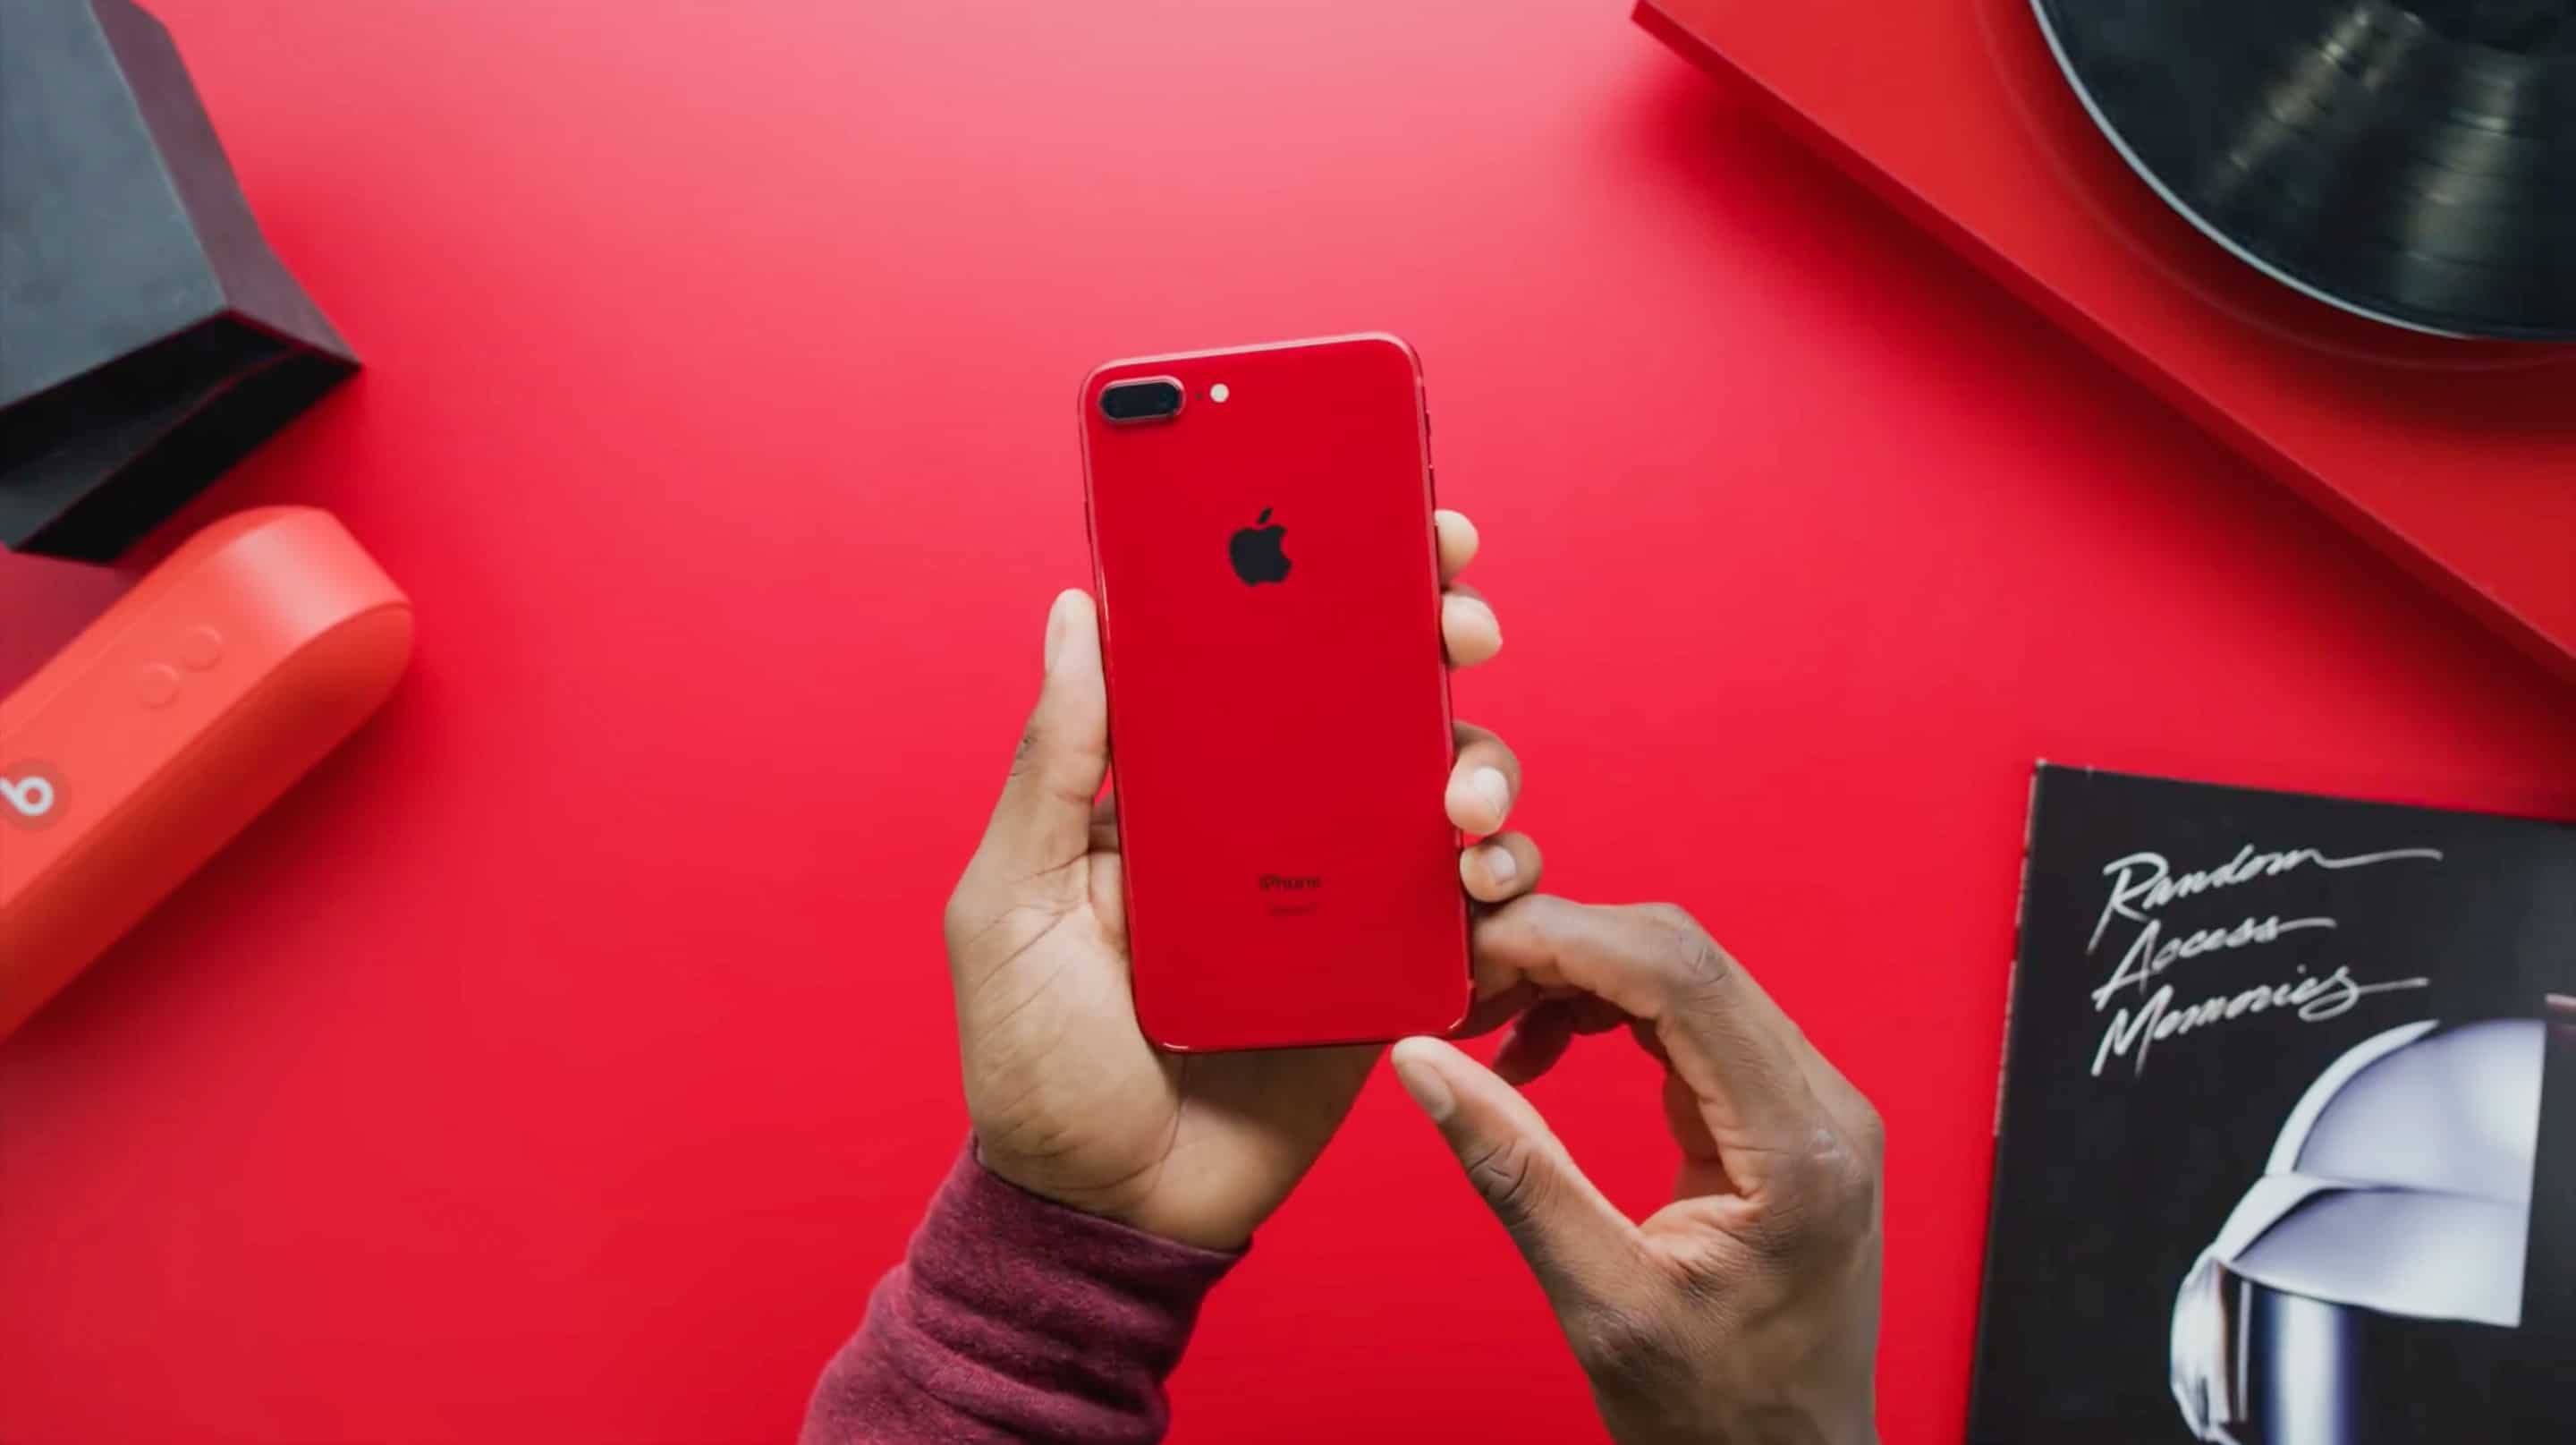 Red iPhone 8 Plus